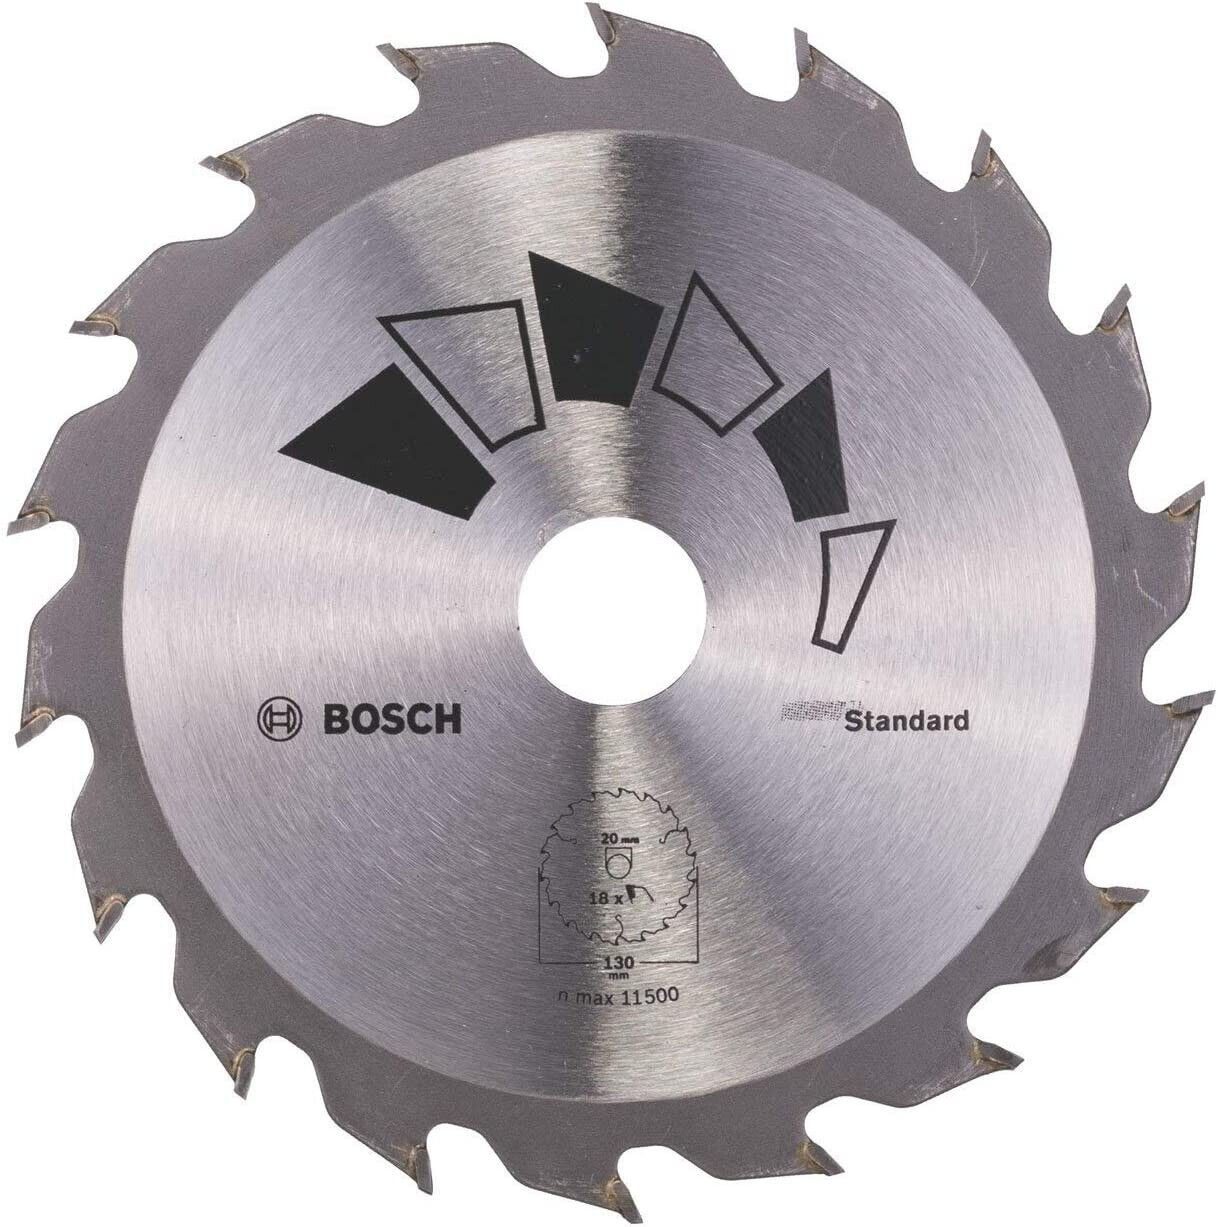 BOSCH Bohrfutter Bosch 2609256802 x Kreissägeblatt x Basic 2.2 20/16,Z18 130